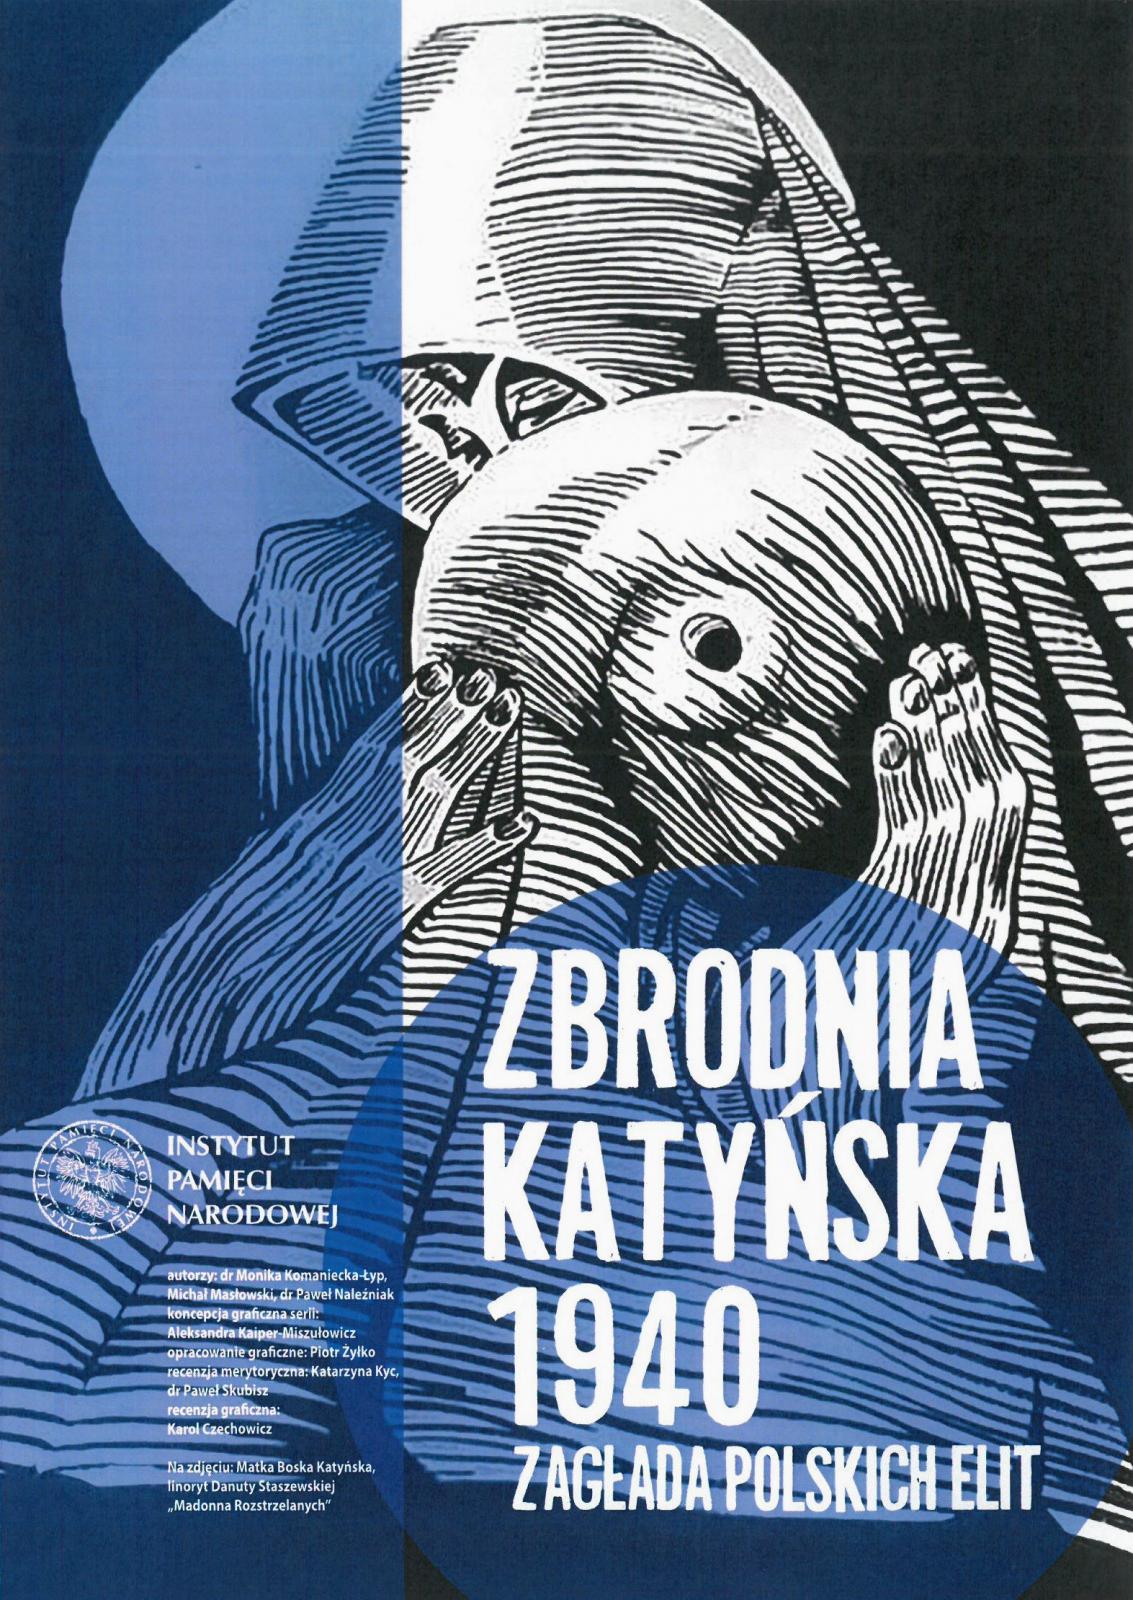 Plakat dotyczący wystawy umamiętniającej tragiczne wydarzenia z Katynia 1940 roku